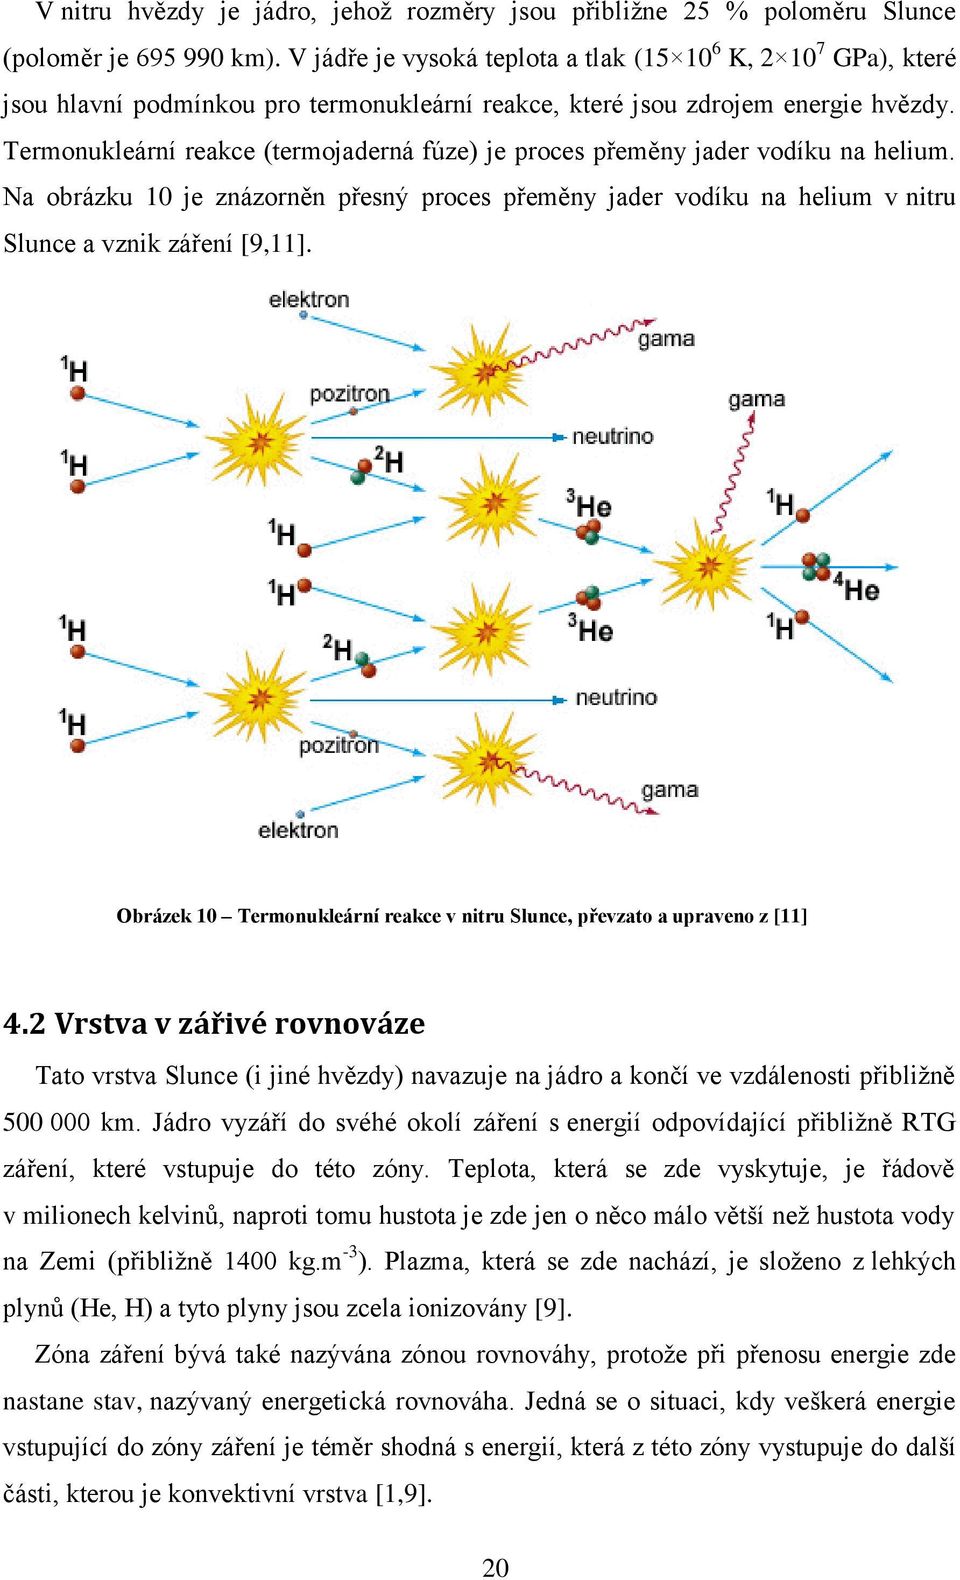 Termonukleární reakce (termojaderná fúze) je proces přeměny jader vodíku na helium. Na obrázku 10 je znázorněn přesný proces přeměny jader vodíku na helium v nitru Slunce a vznik záření [9,11].